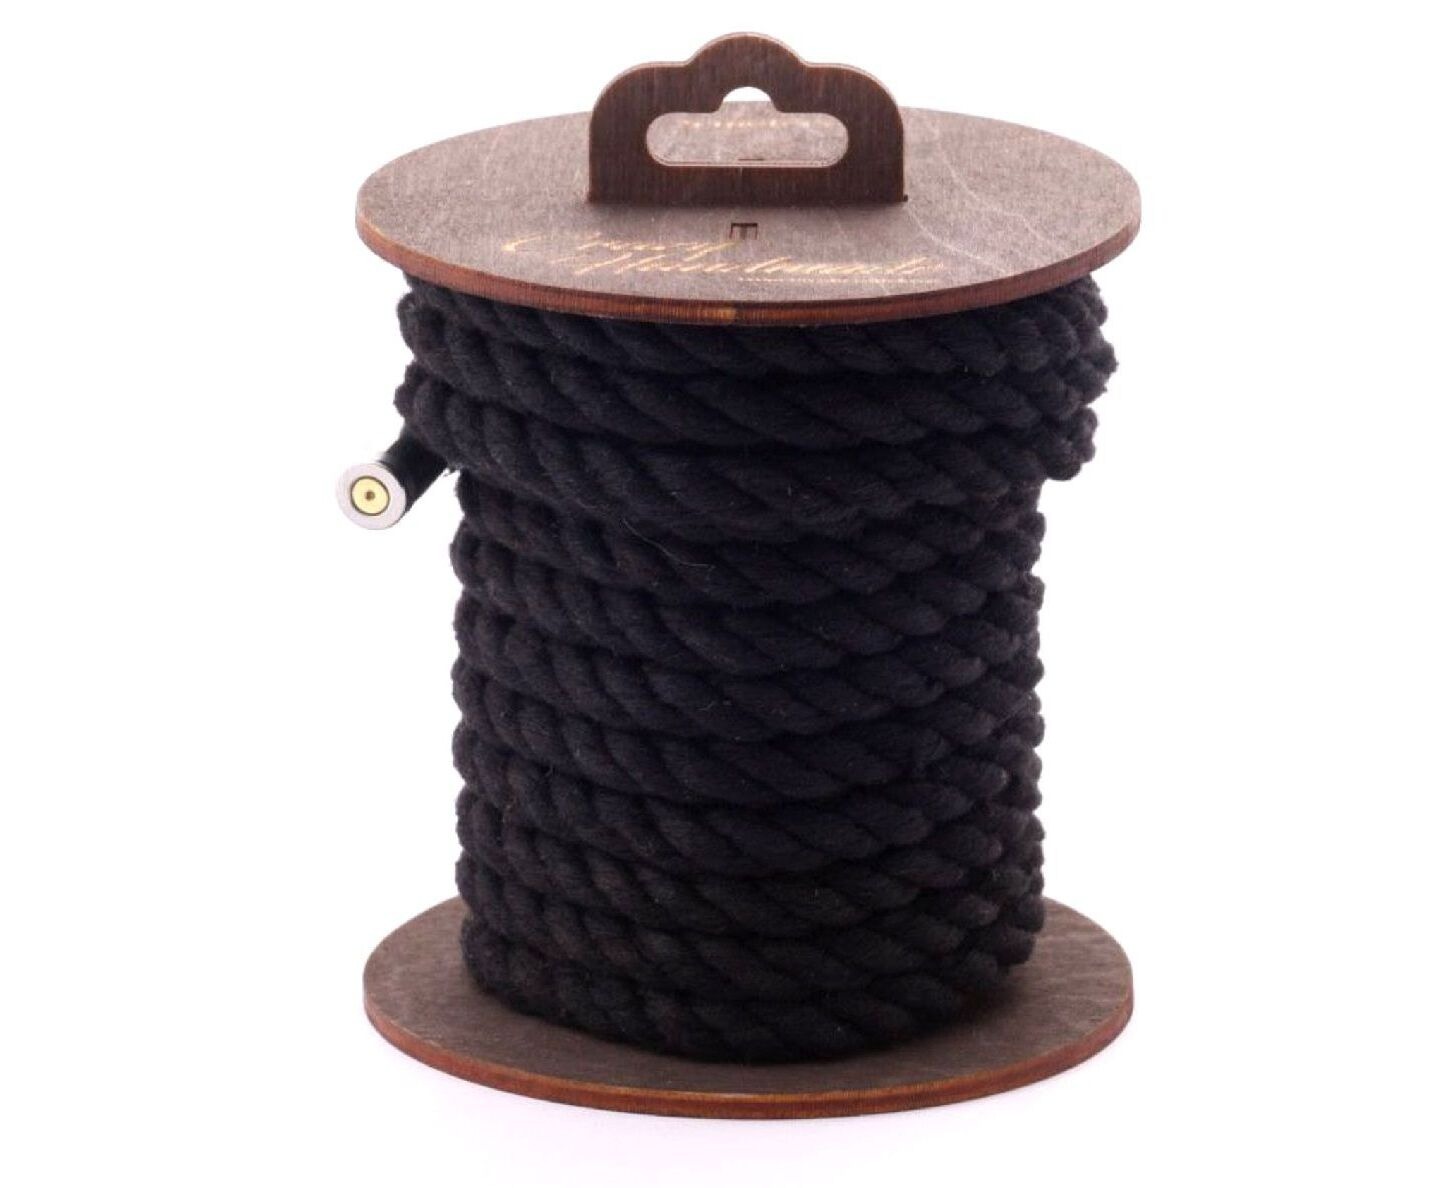 Черная хлопковая веревка для бондажа на катушке - 3 м.